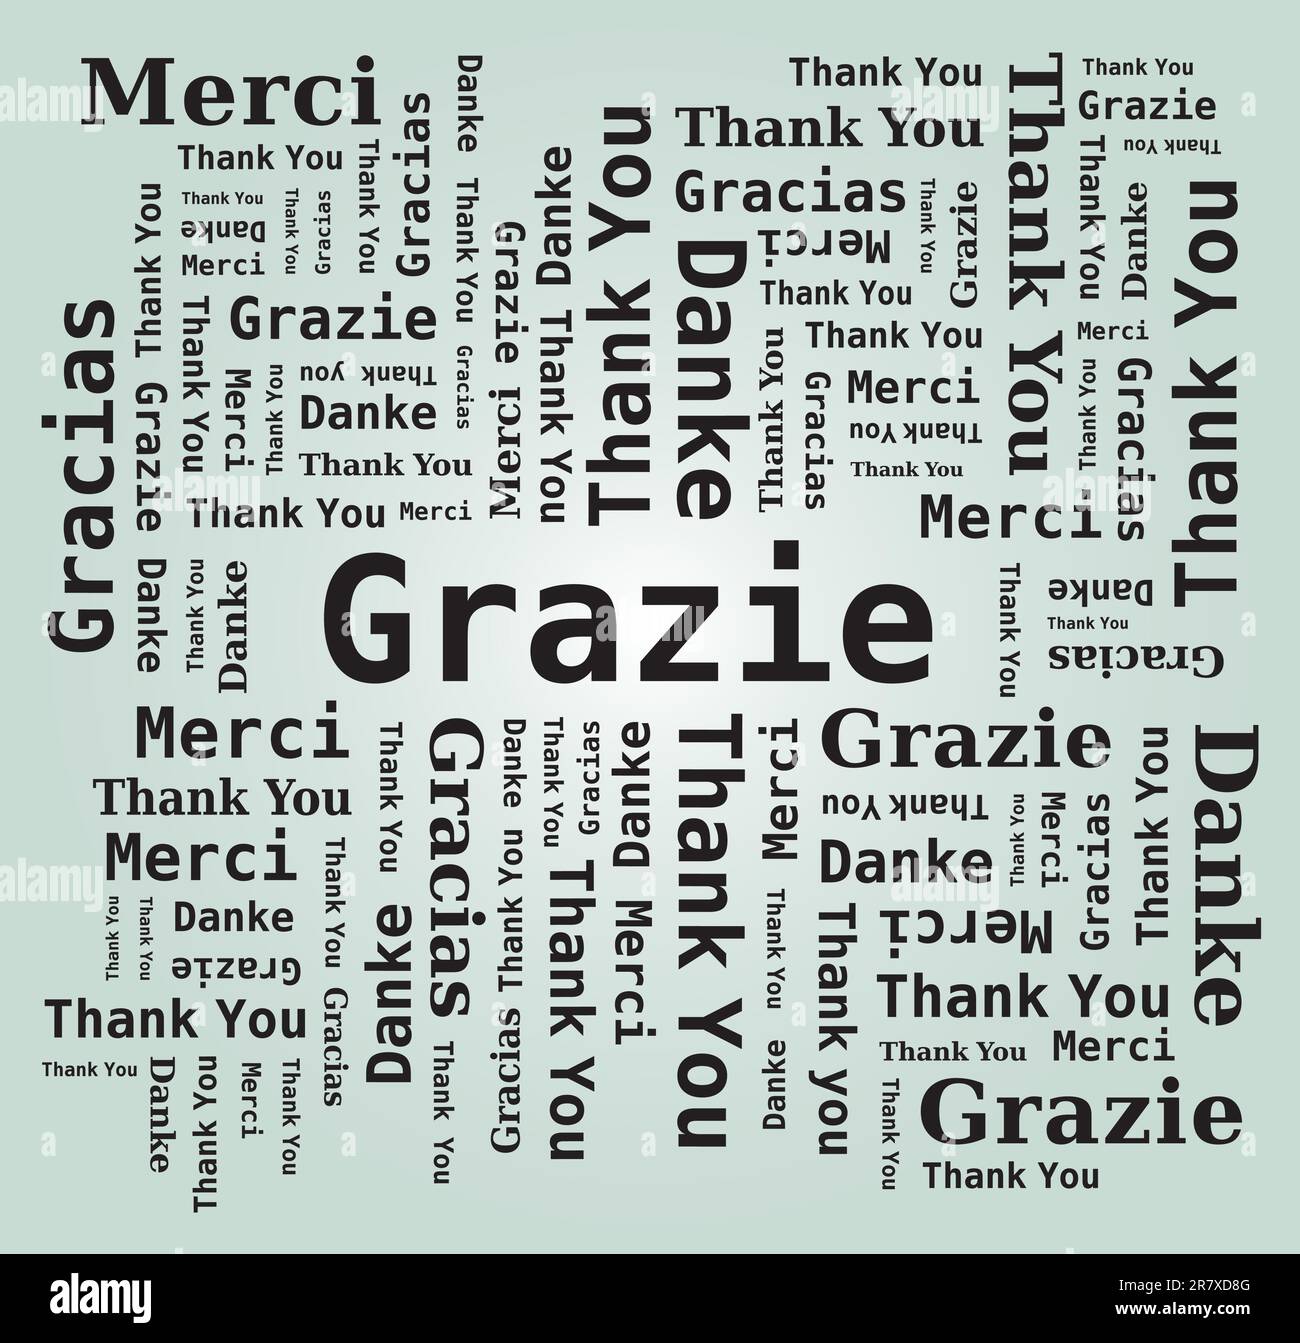 Merci Word Cloud dans différentes langues - 5 langues, anglais, français, allemand, espagnol et italien Illustration de Vecteur